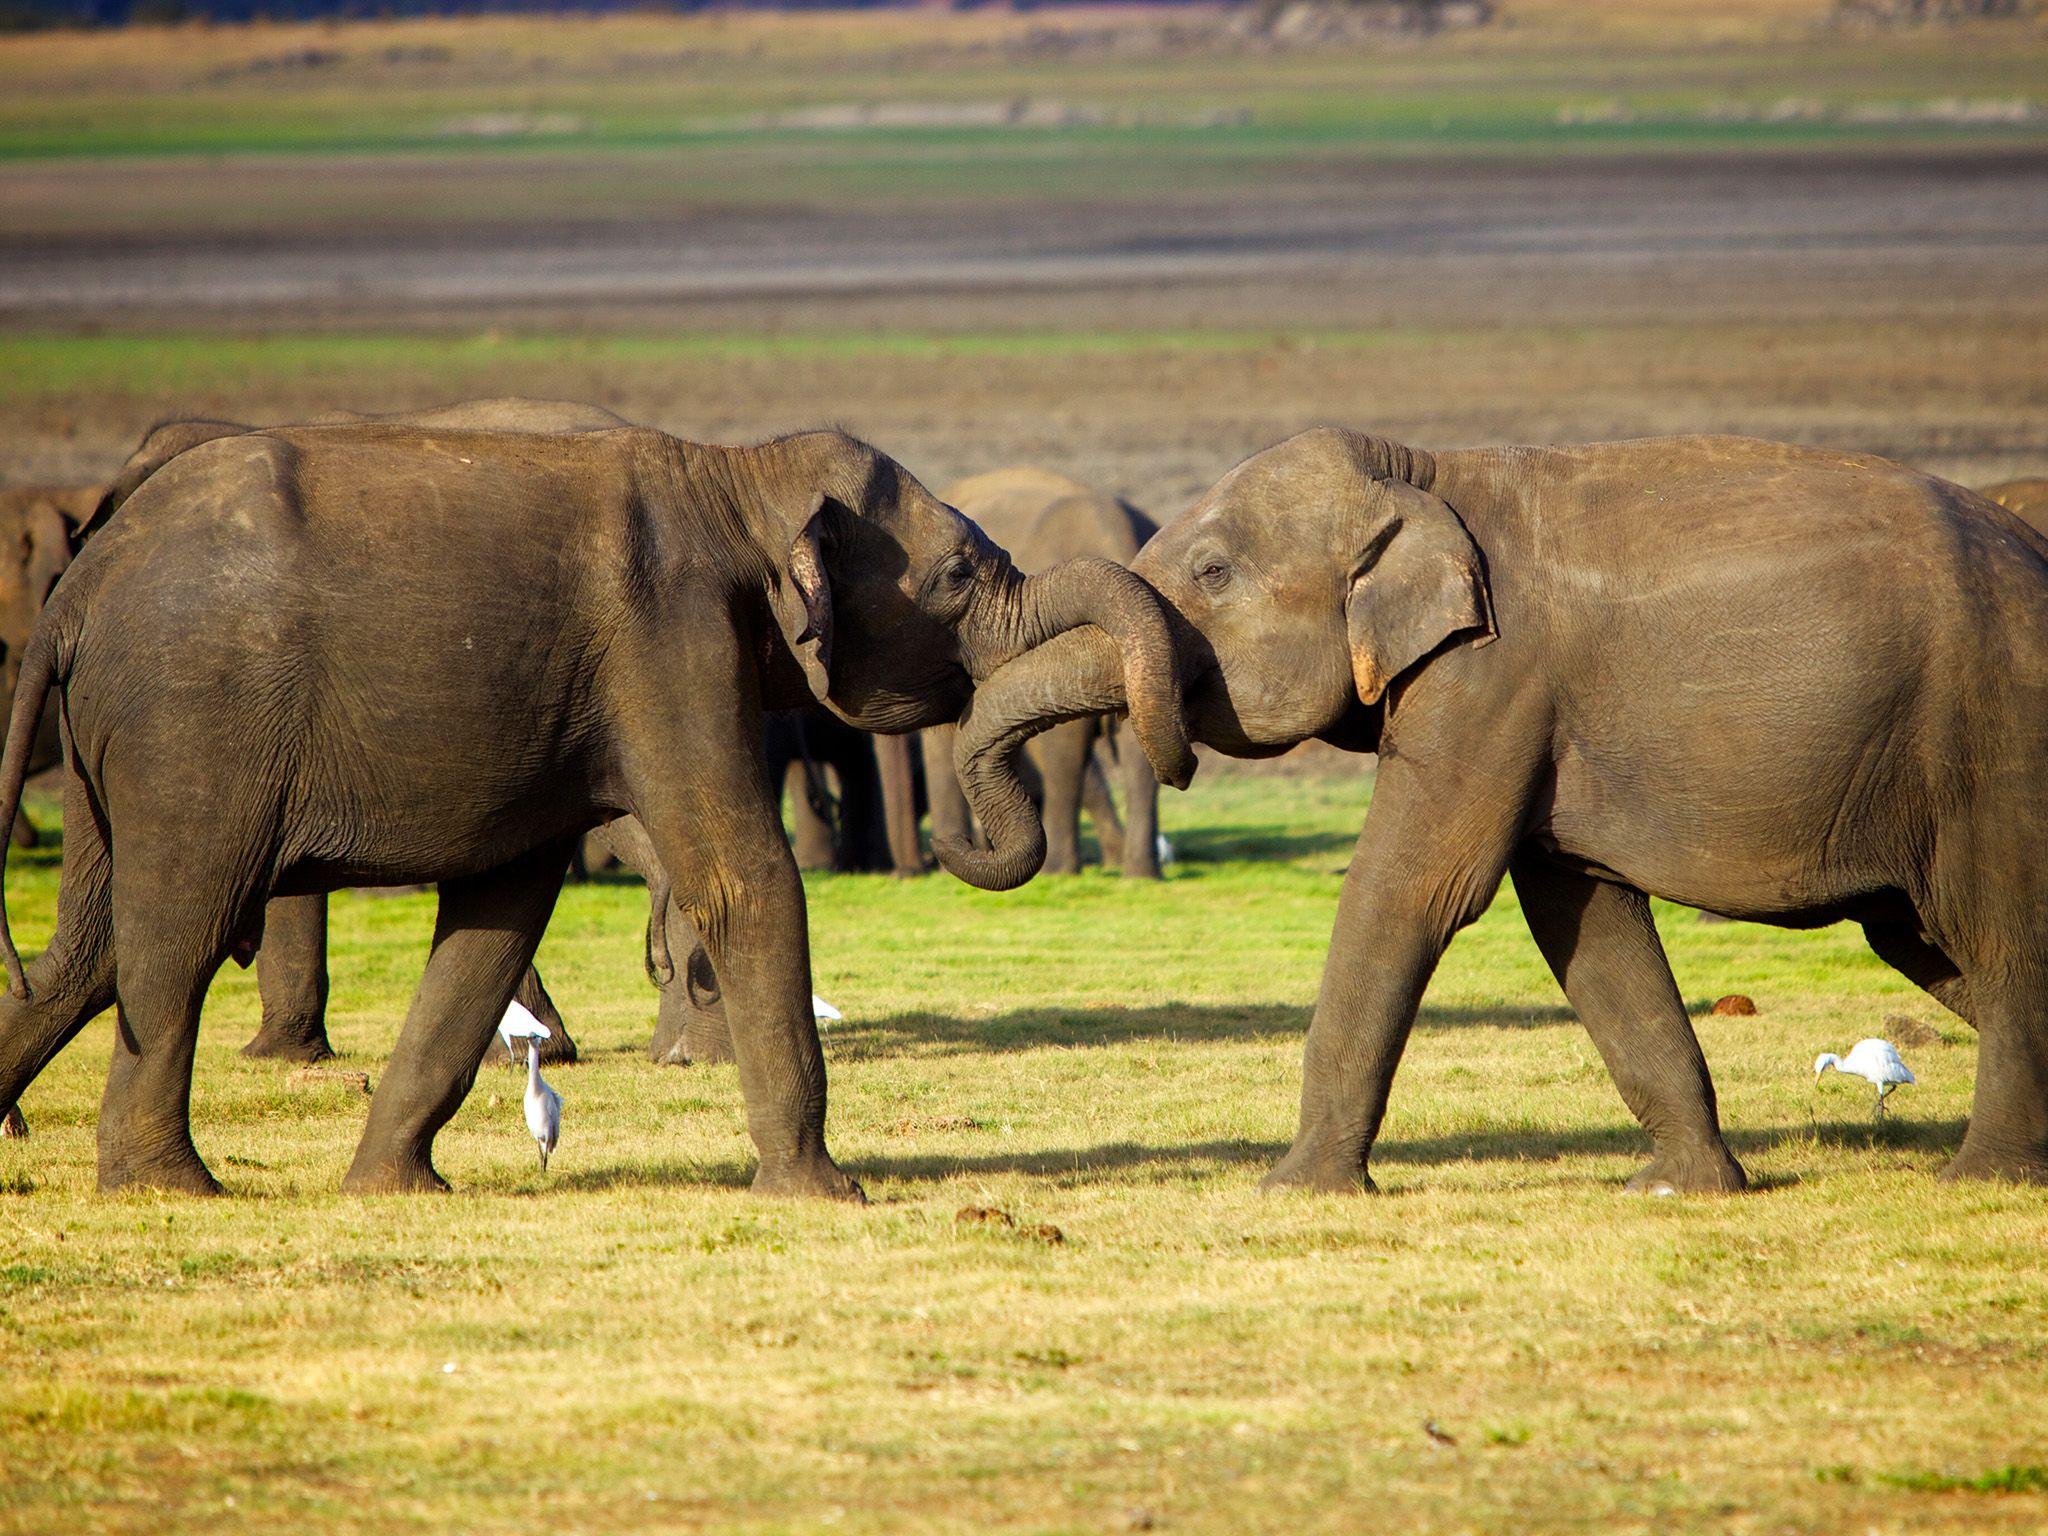 سريلانكا: يغلق اثنان من صغار الفيلة الذكور خرطومهما... [Photo of the day - مارس 2015]